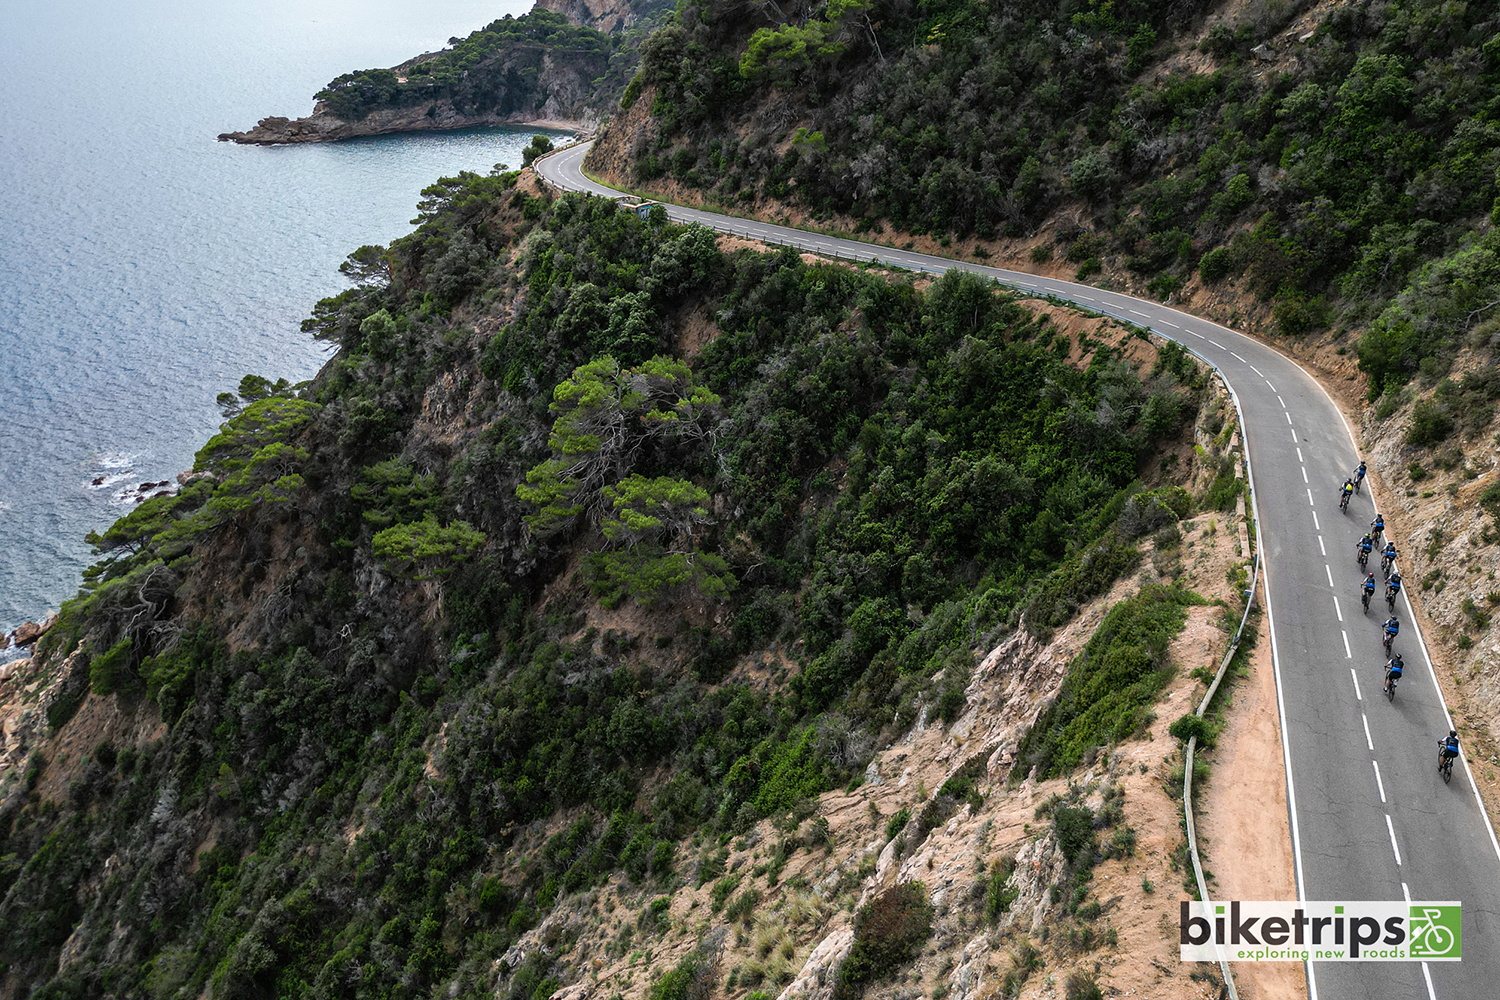 Dronefoto van fietsers op kustweg Costa Brava